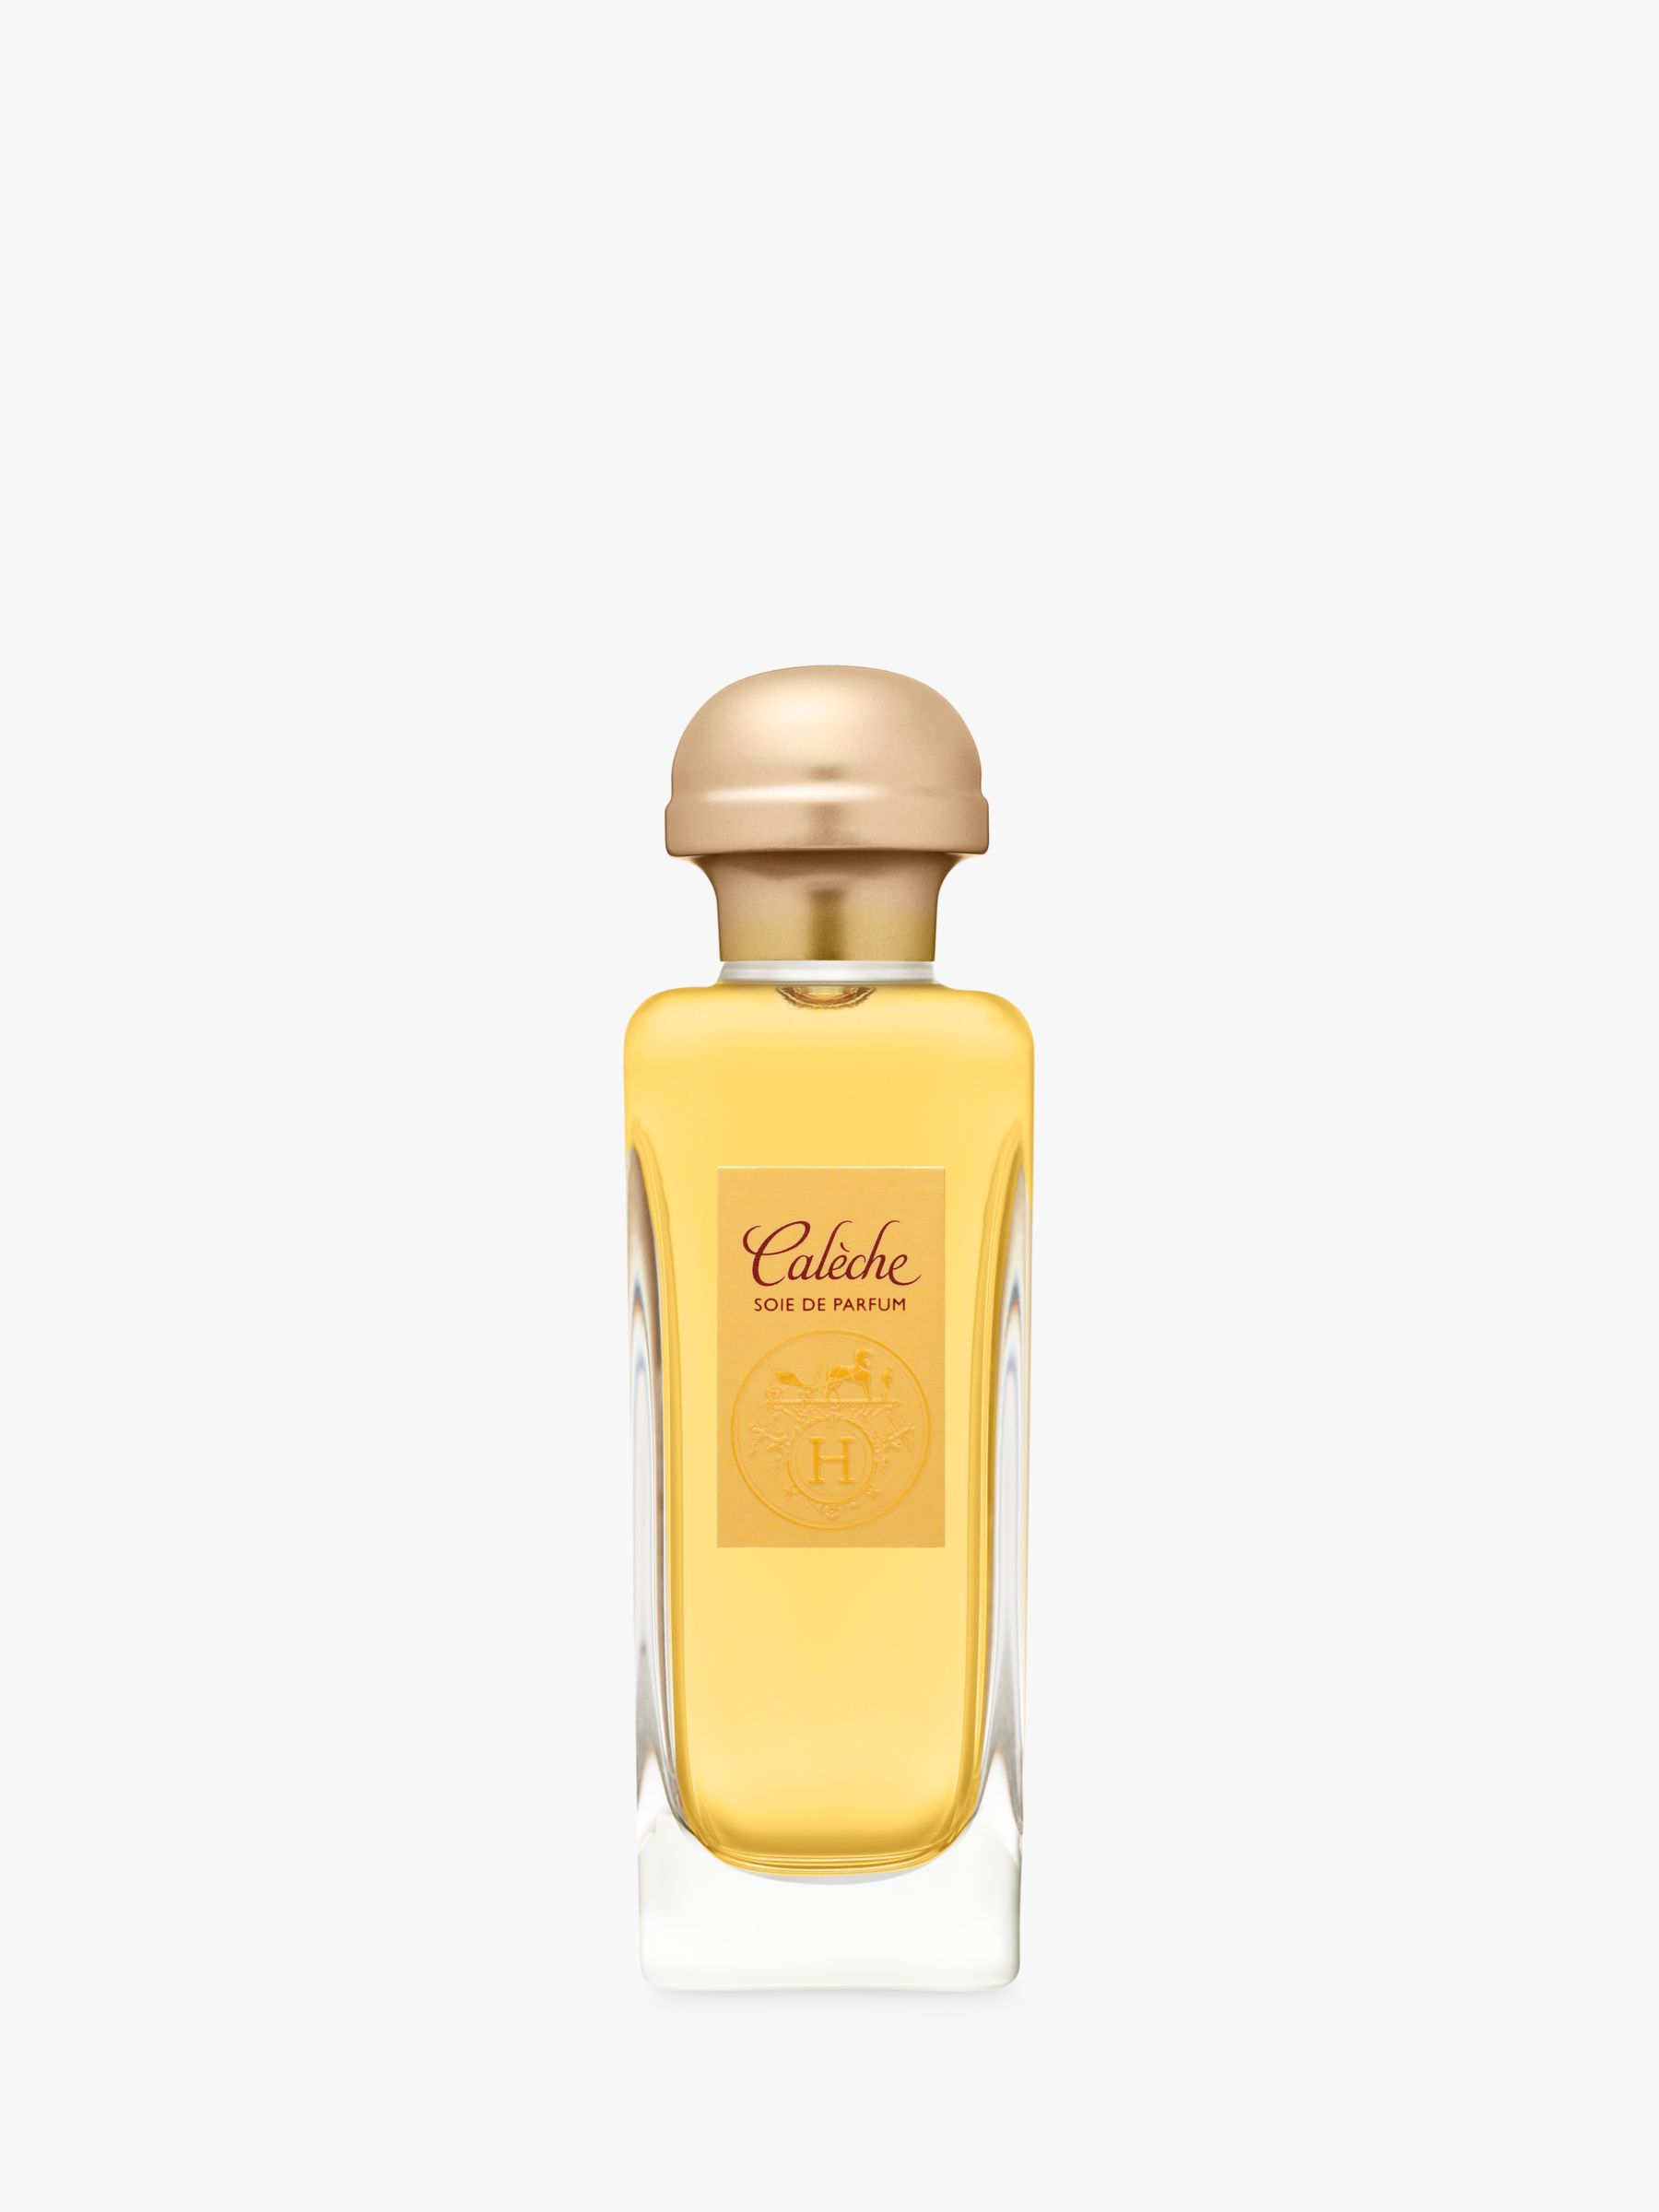 HERMÈS Calèche Soie de Parfum at John Lewis & Partners